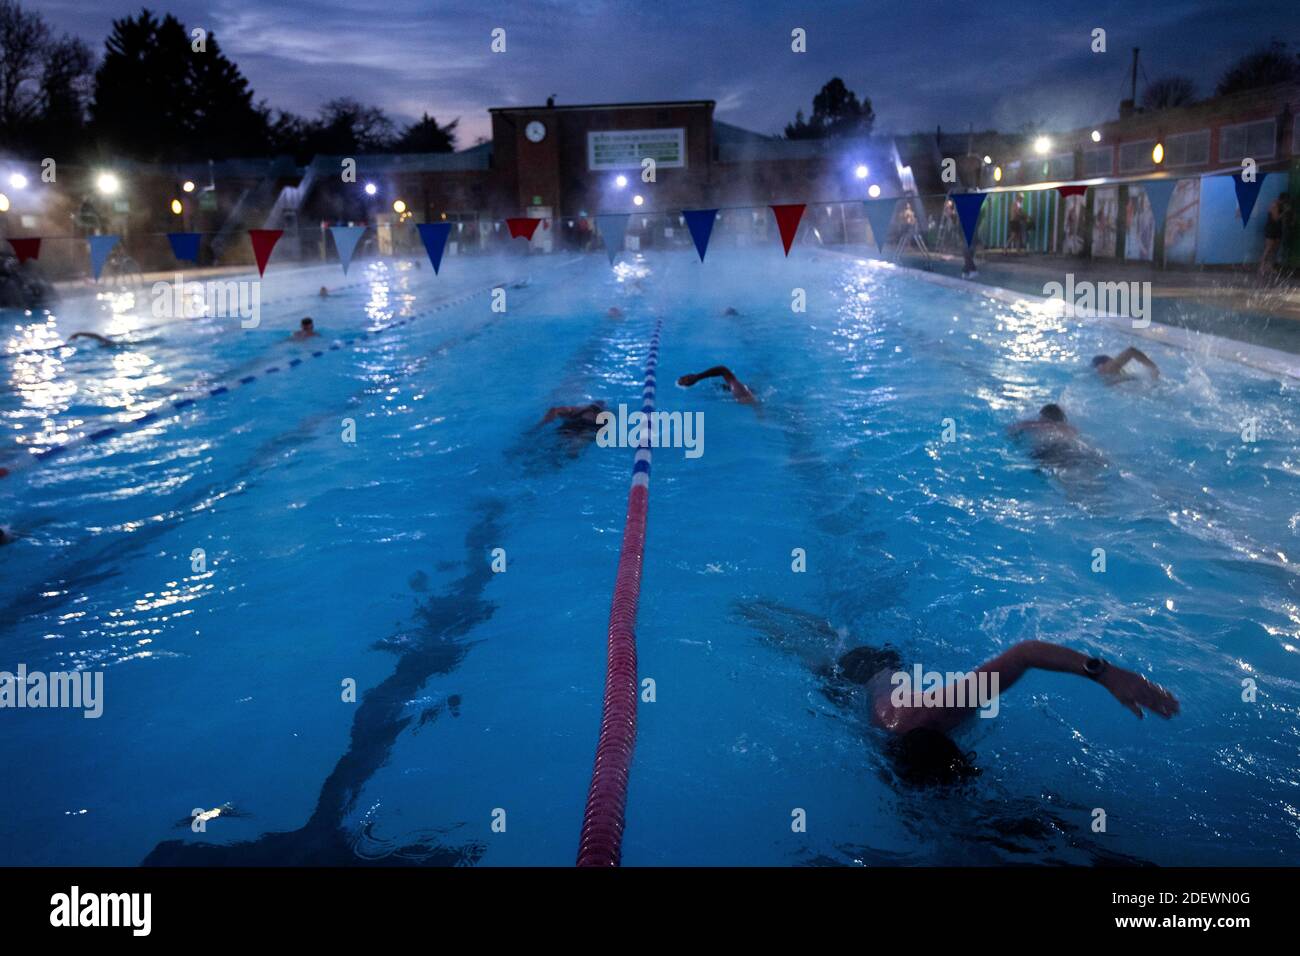 Nuotatori al Charlton Lido di Hornfair Park, Londra, il suo primo giorno di riapertura dopo la fine del secondo blocco nazionale e l'Inghilterra entra in un sistema rafforzato di restrizioni regionali al coronavirus. Foto Stock